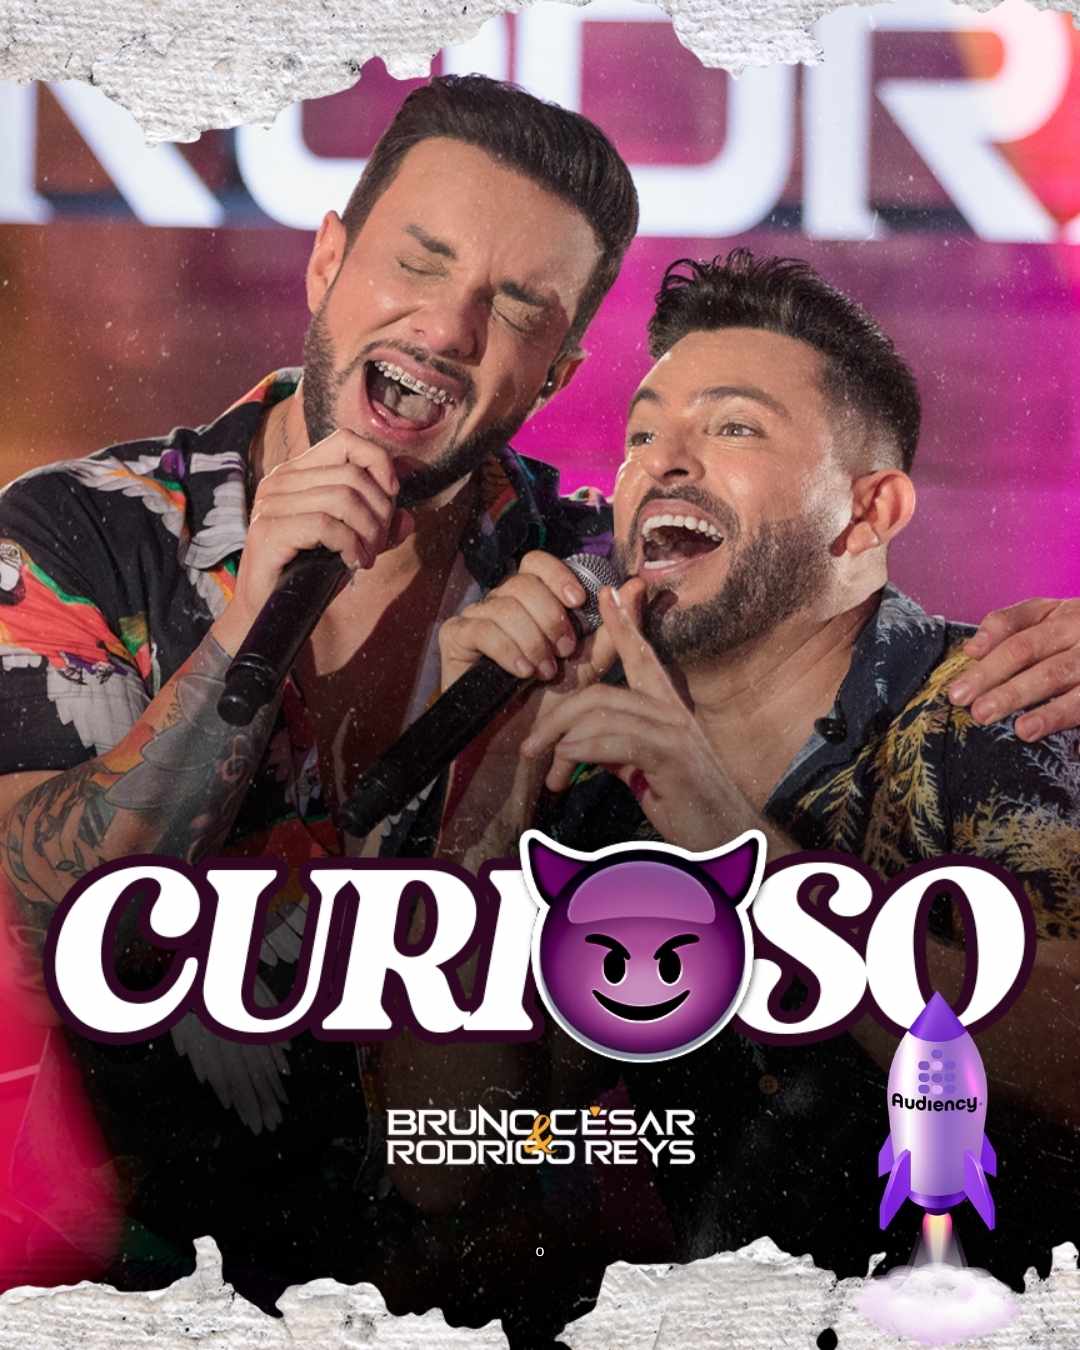 Bruno César e Rodrigo Reys lançamento audiency